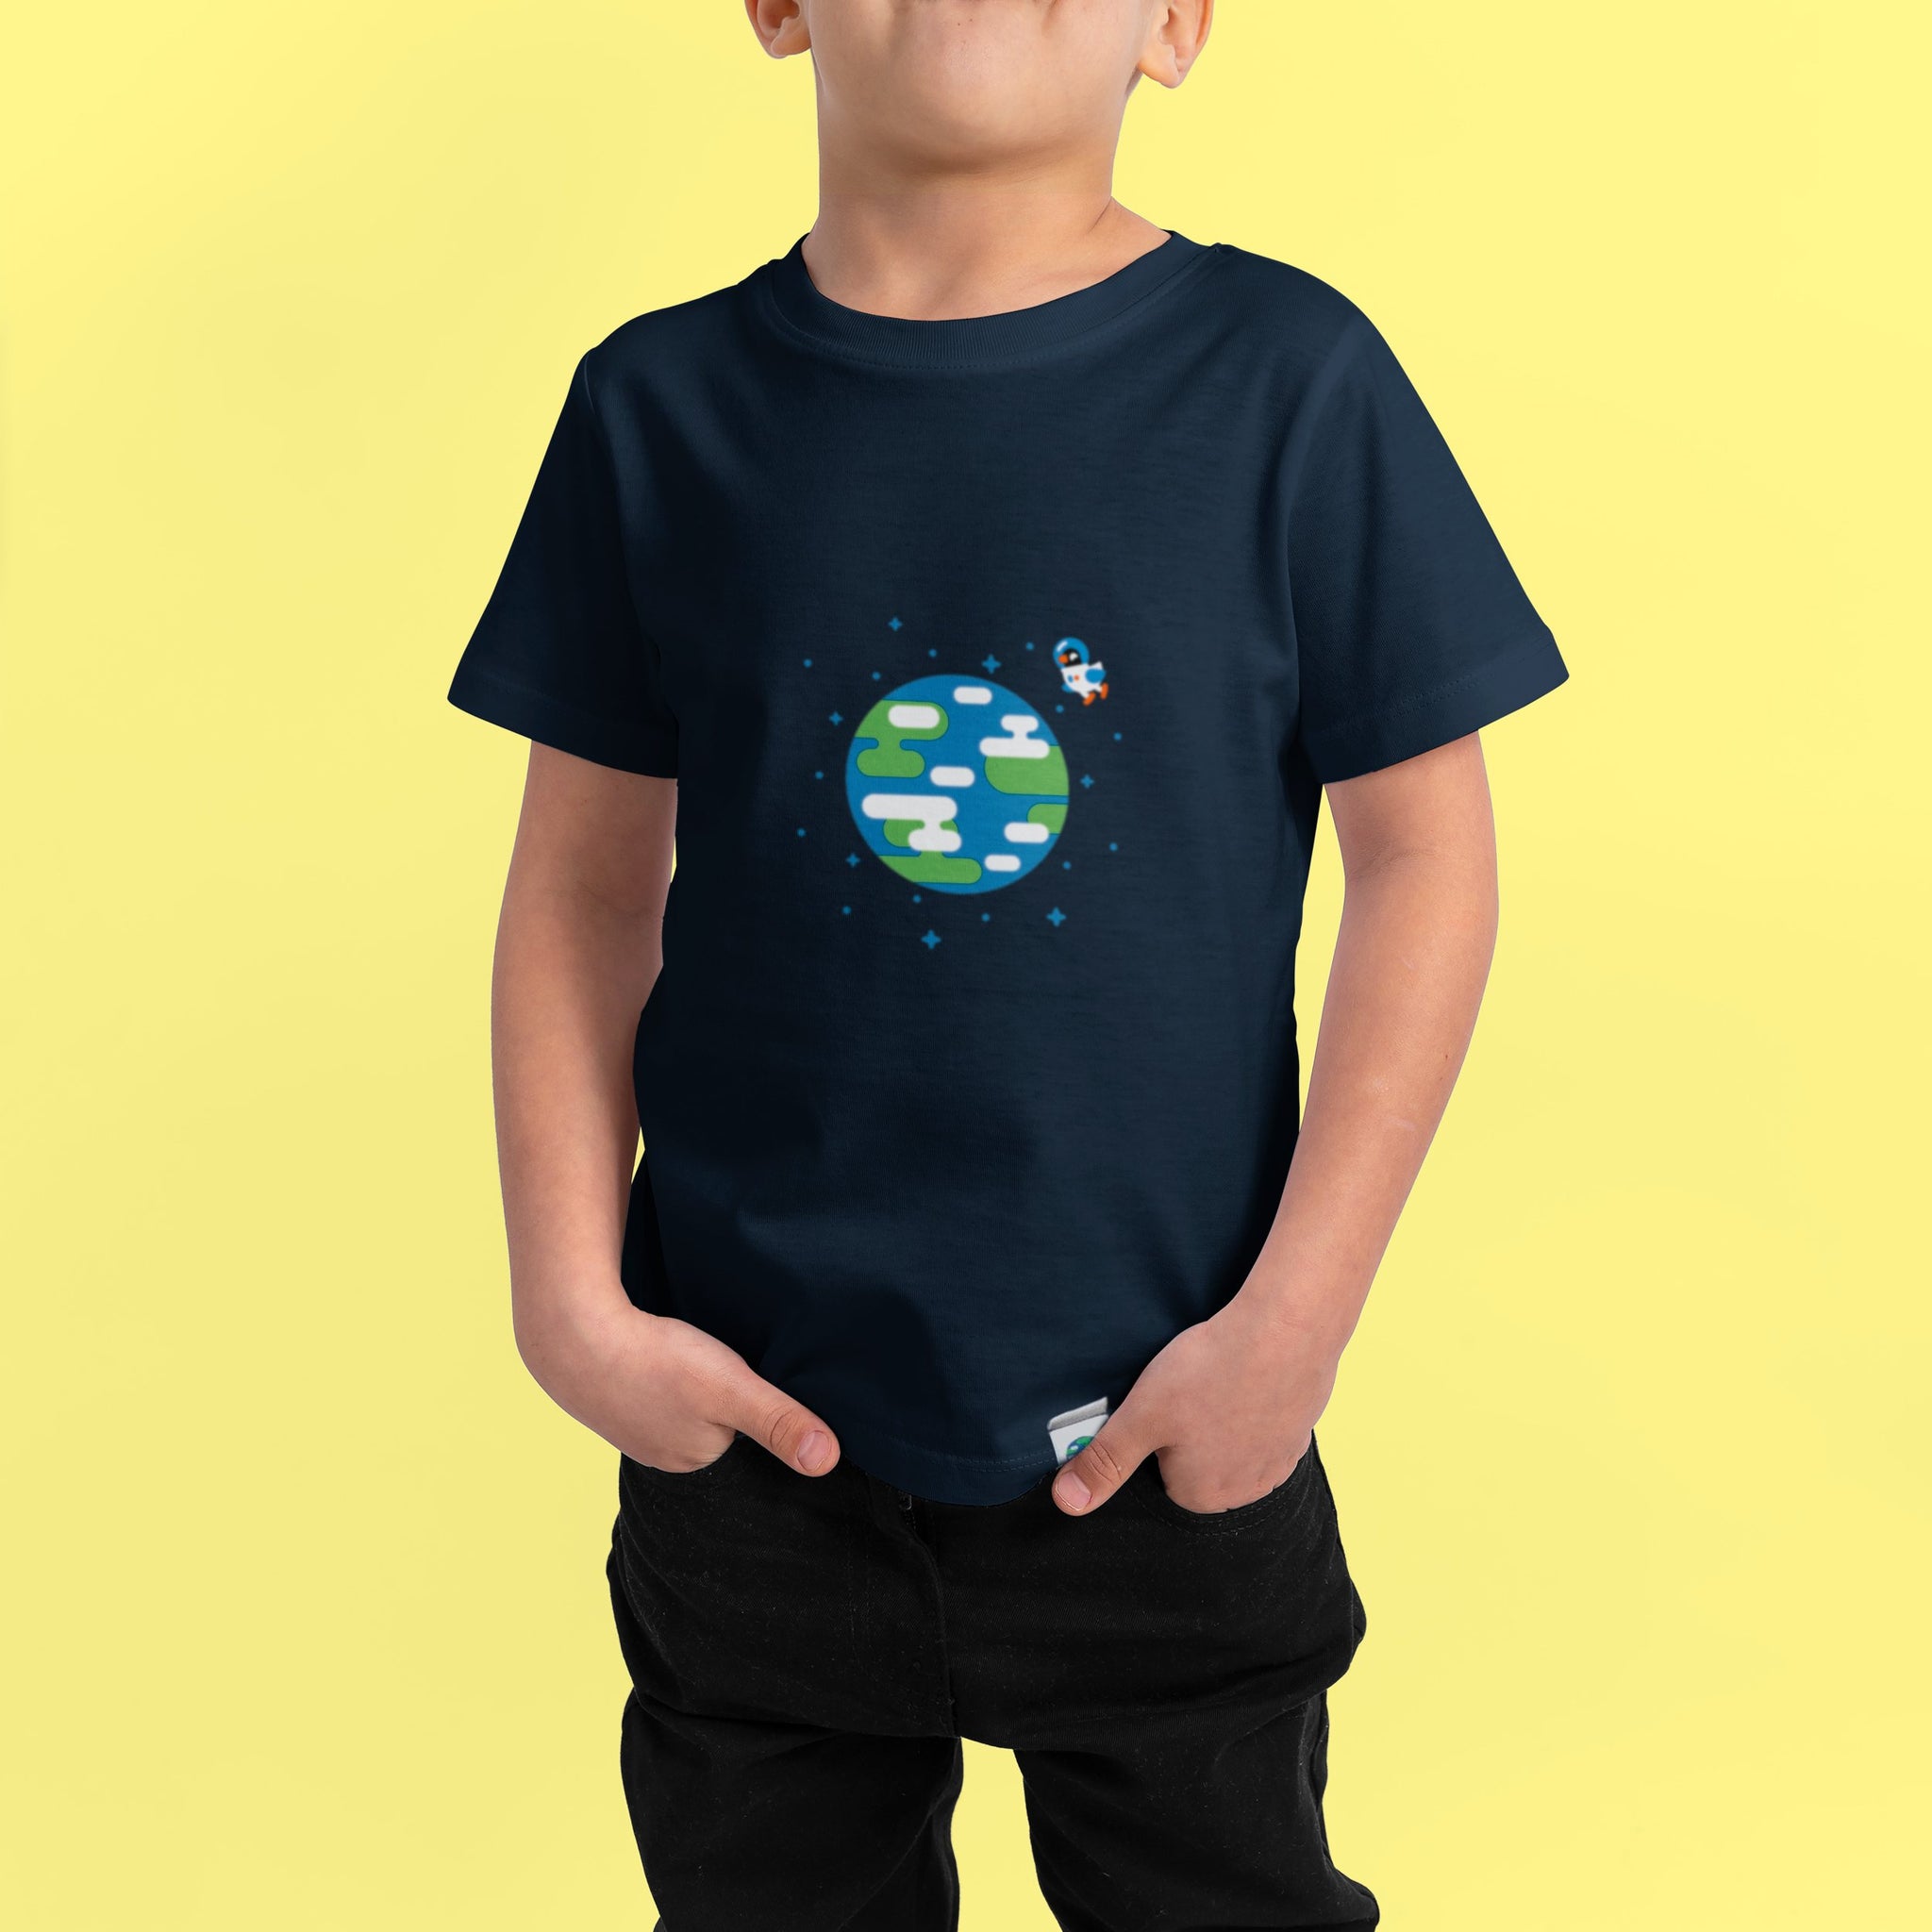 Earth T-Shirt Kids – Merch – Official shop kurzgesagt the